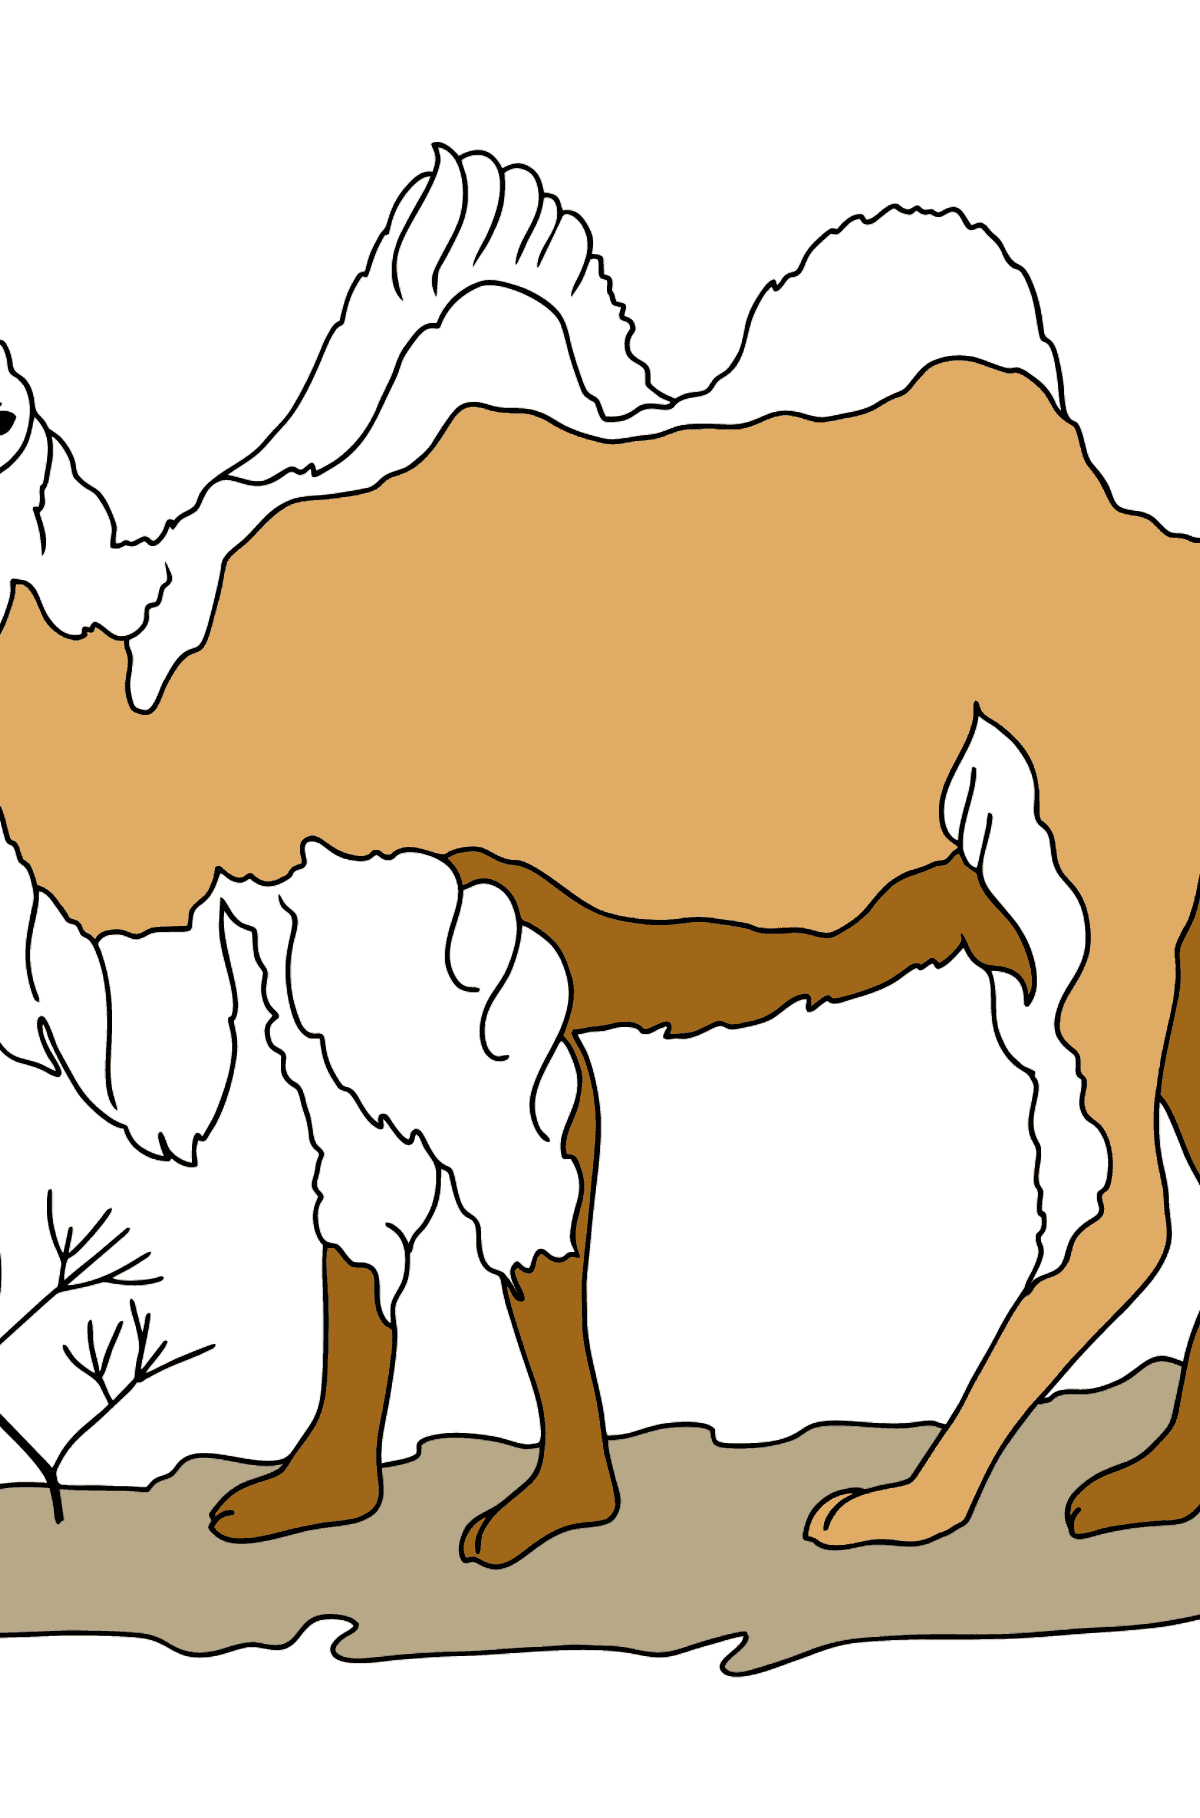 Ausmalbild - Ein Kamel in der Wüste - Malvorlagen für Kinder